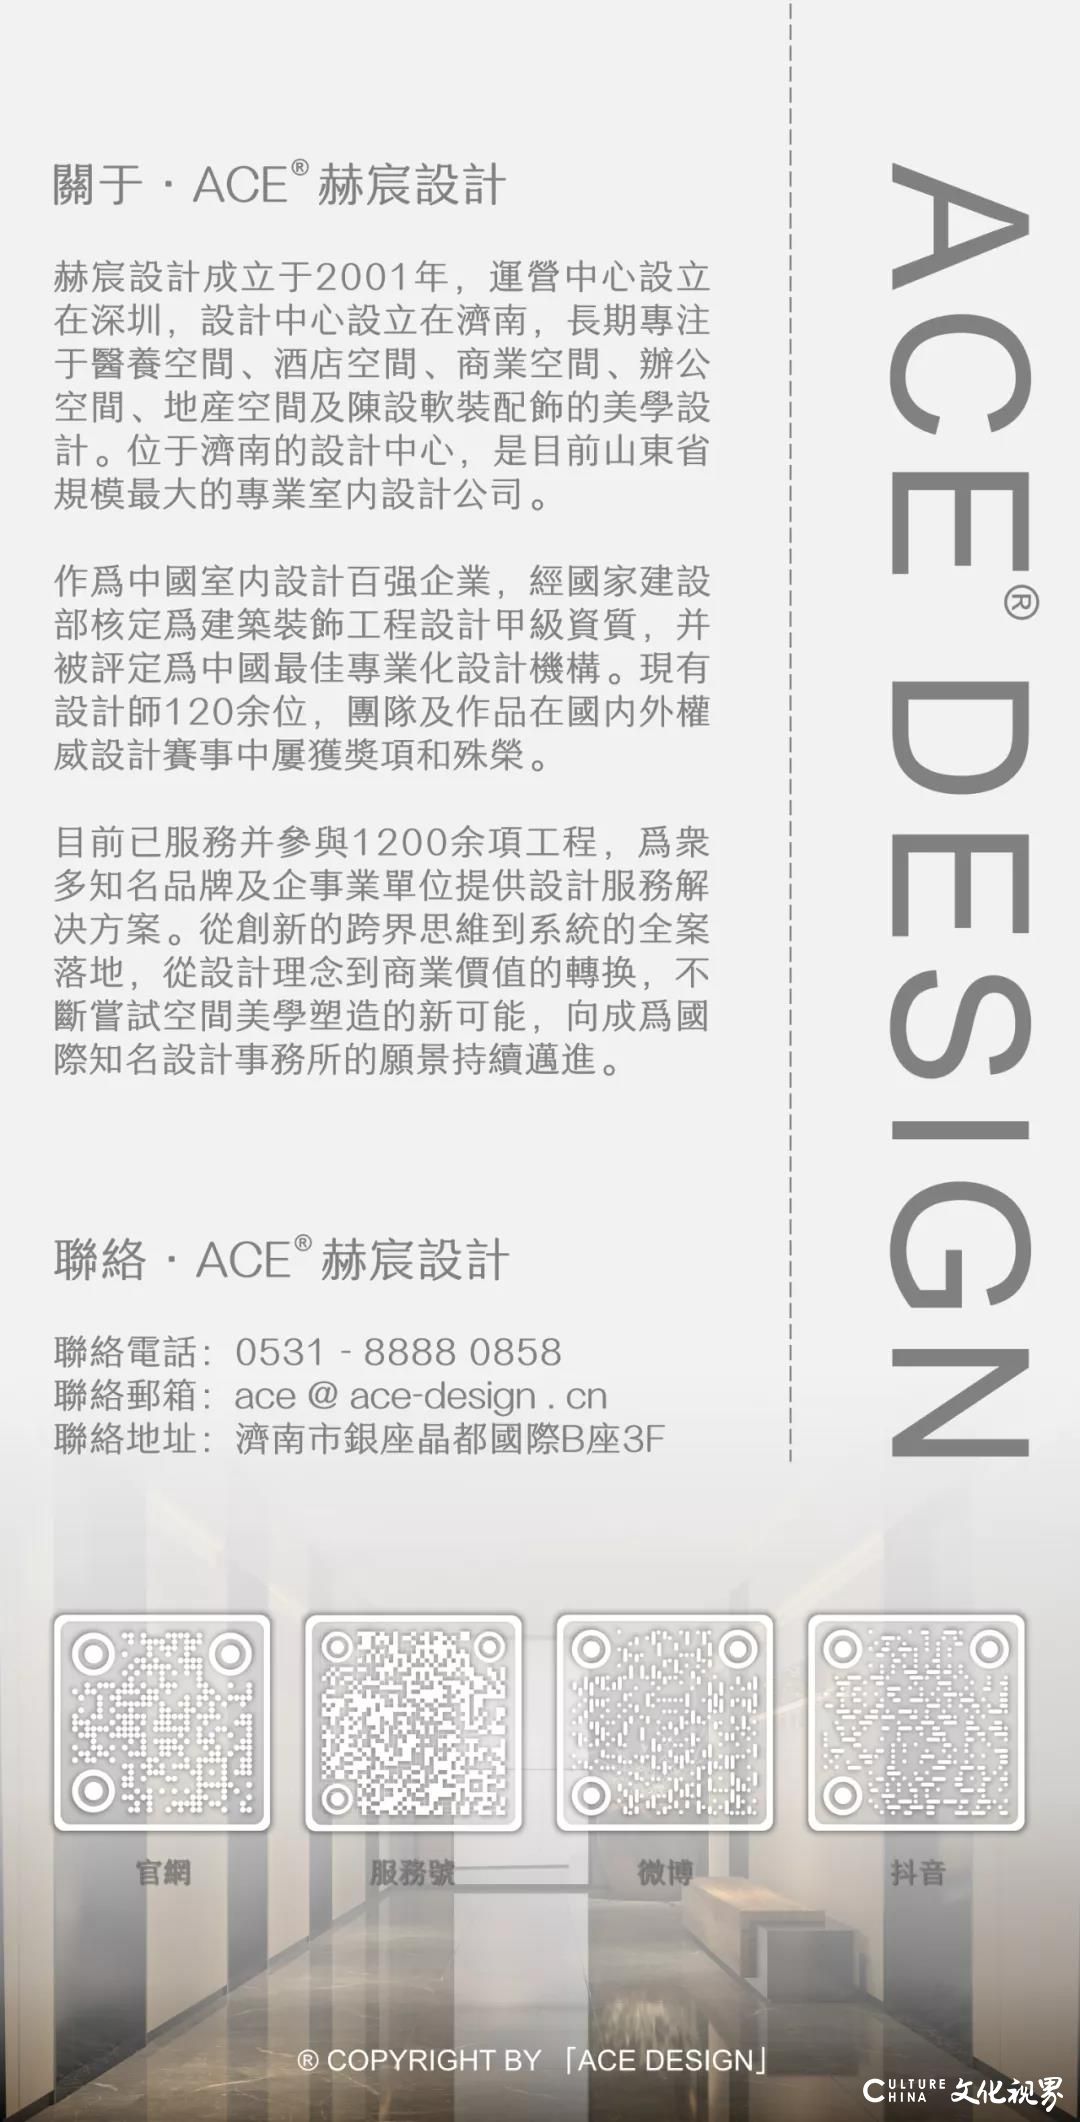 ACE赫宸设计荣获2021MUSE缪斯国际设计最高荣誉——铂金奖